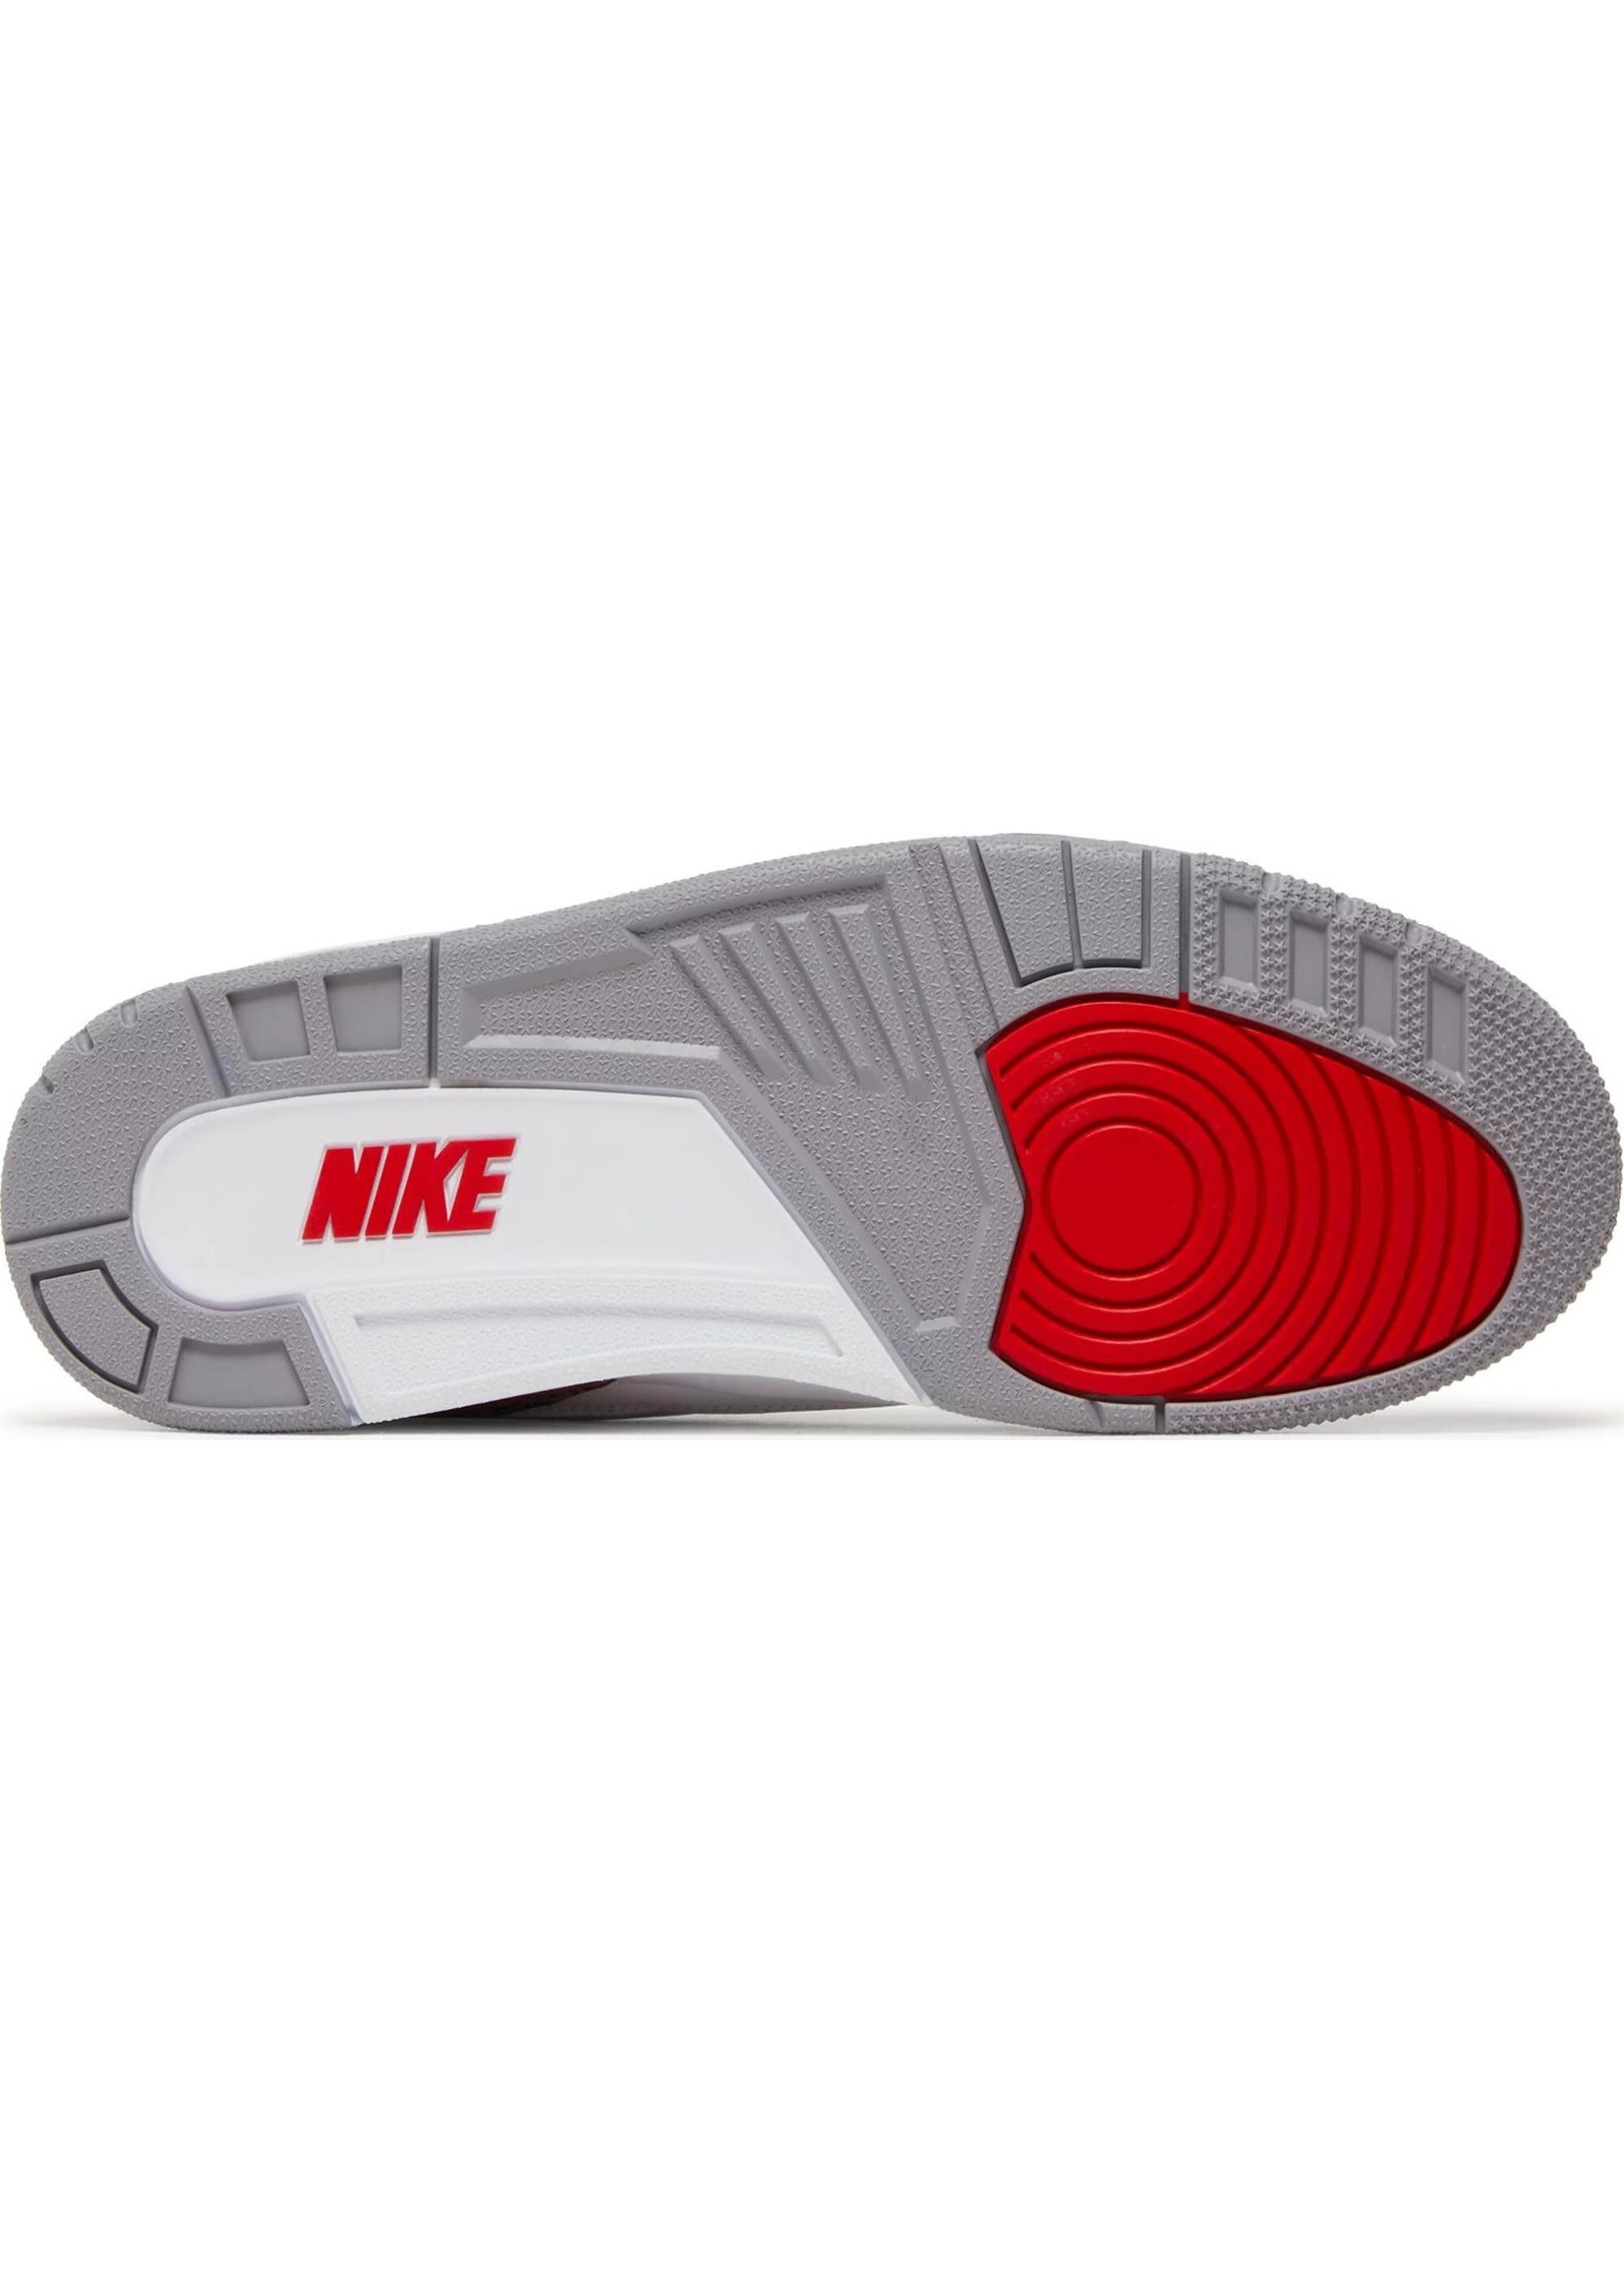 Nike Air Jordan 3 Retro 'Fire Red' | Sold